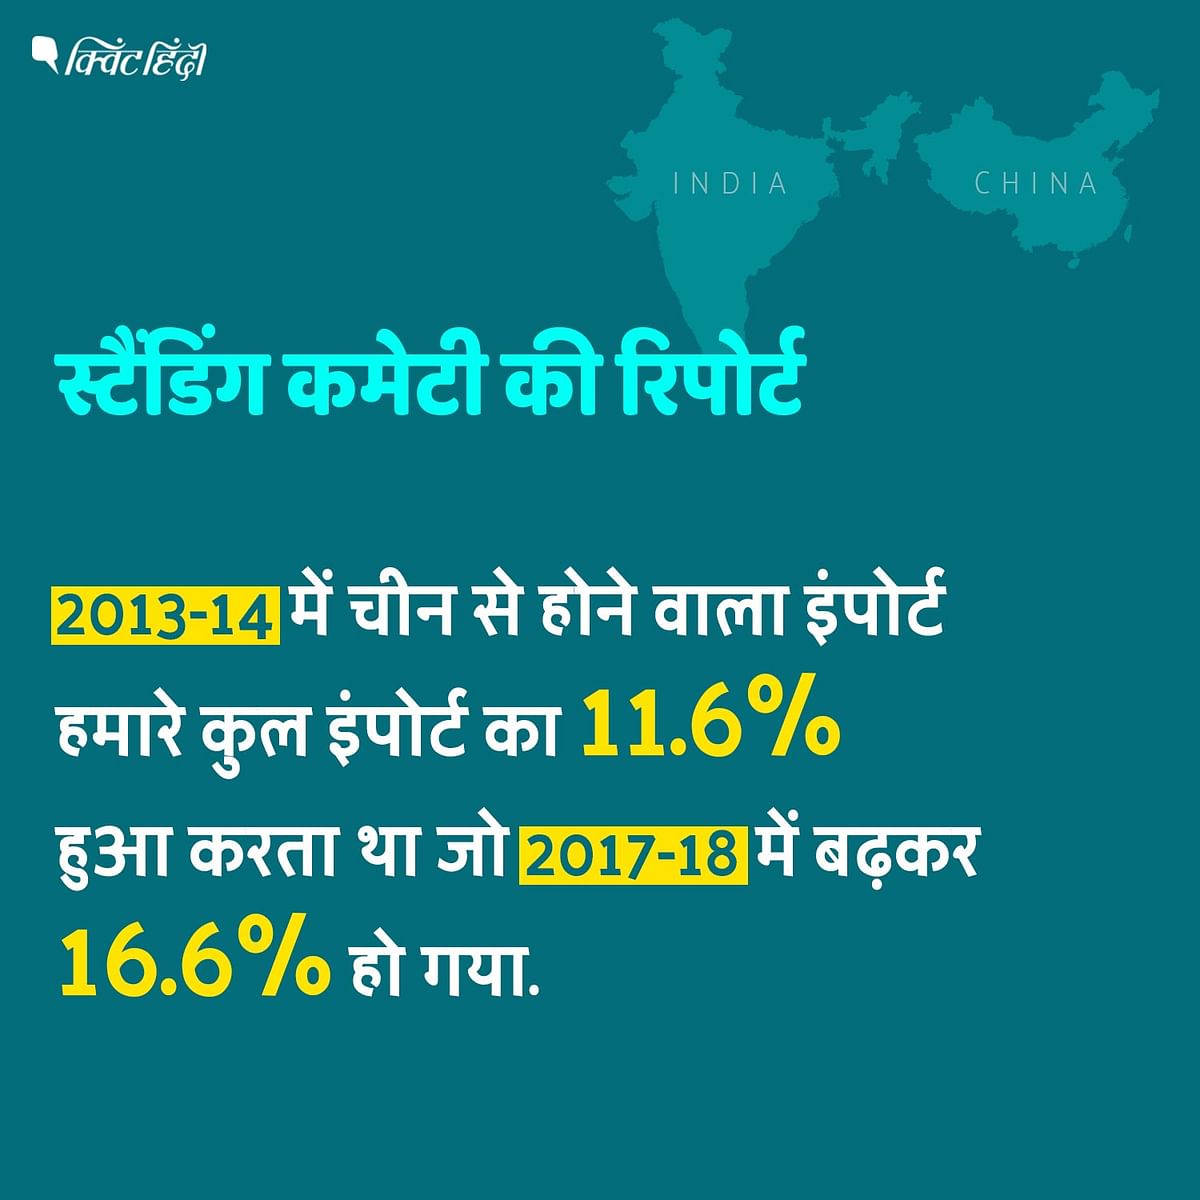 भारते के कुल व्यापार घाटे में चीन का योगदान 40% है